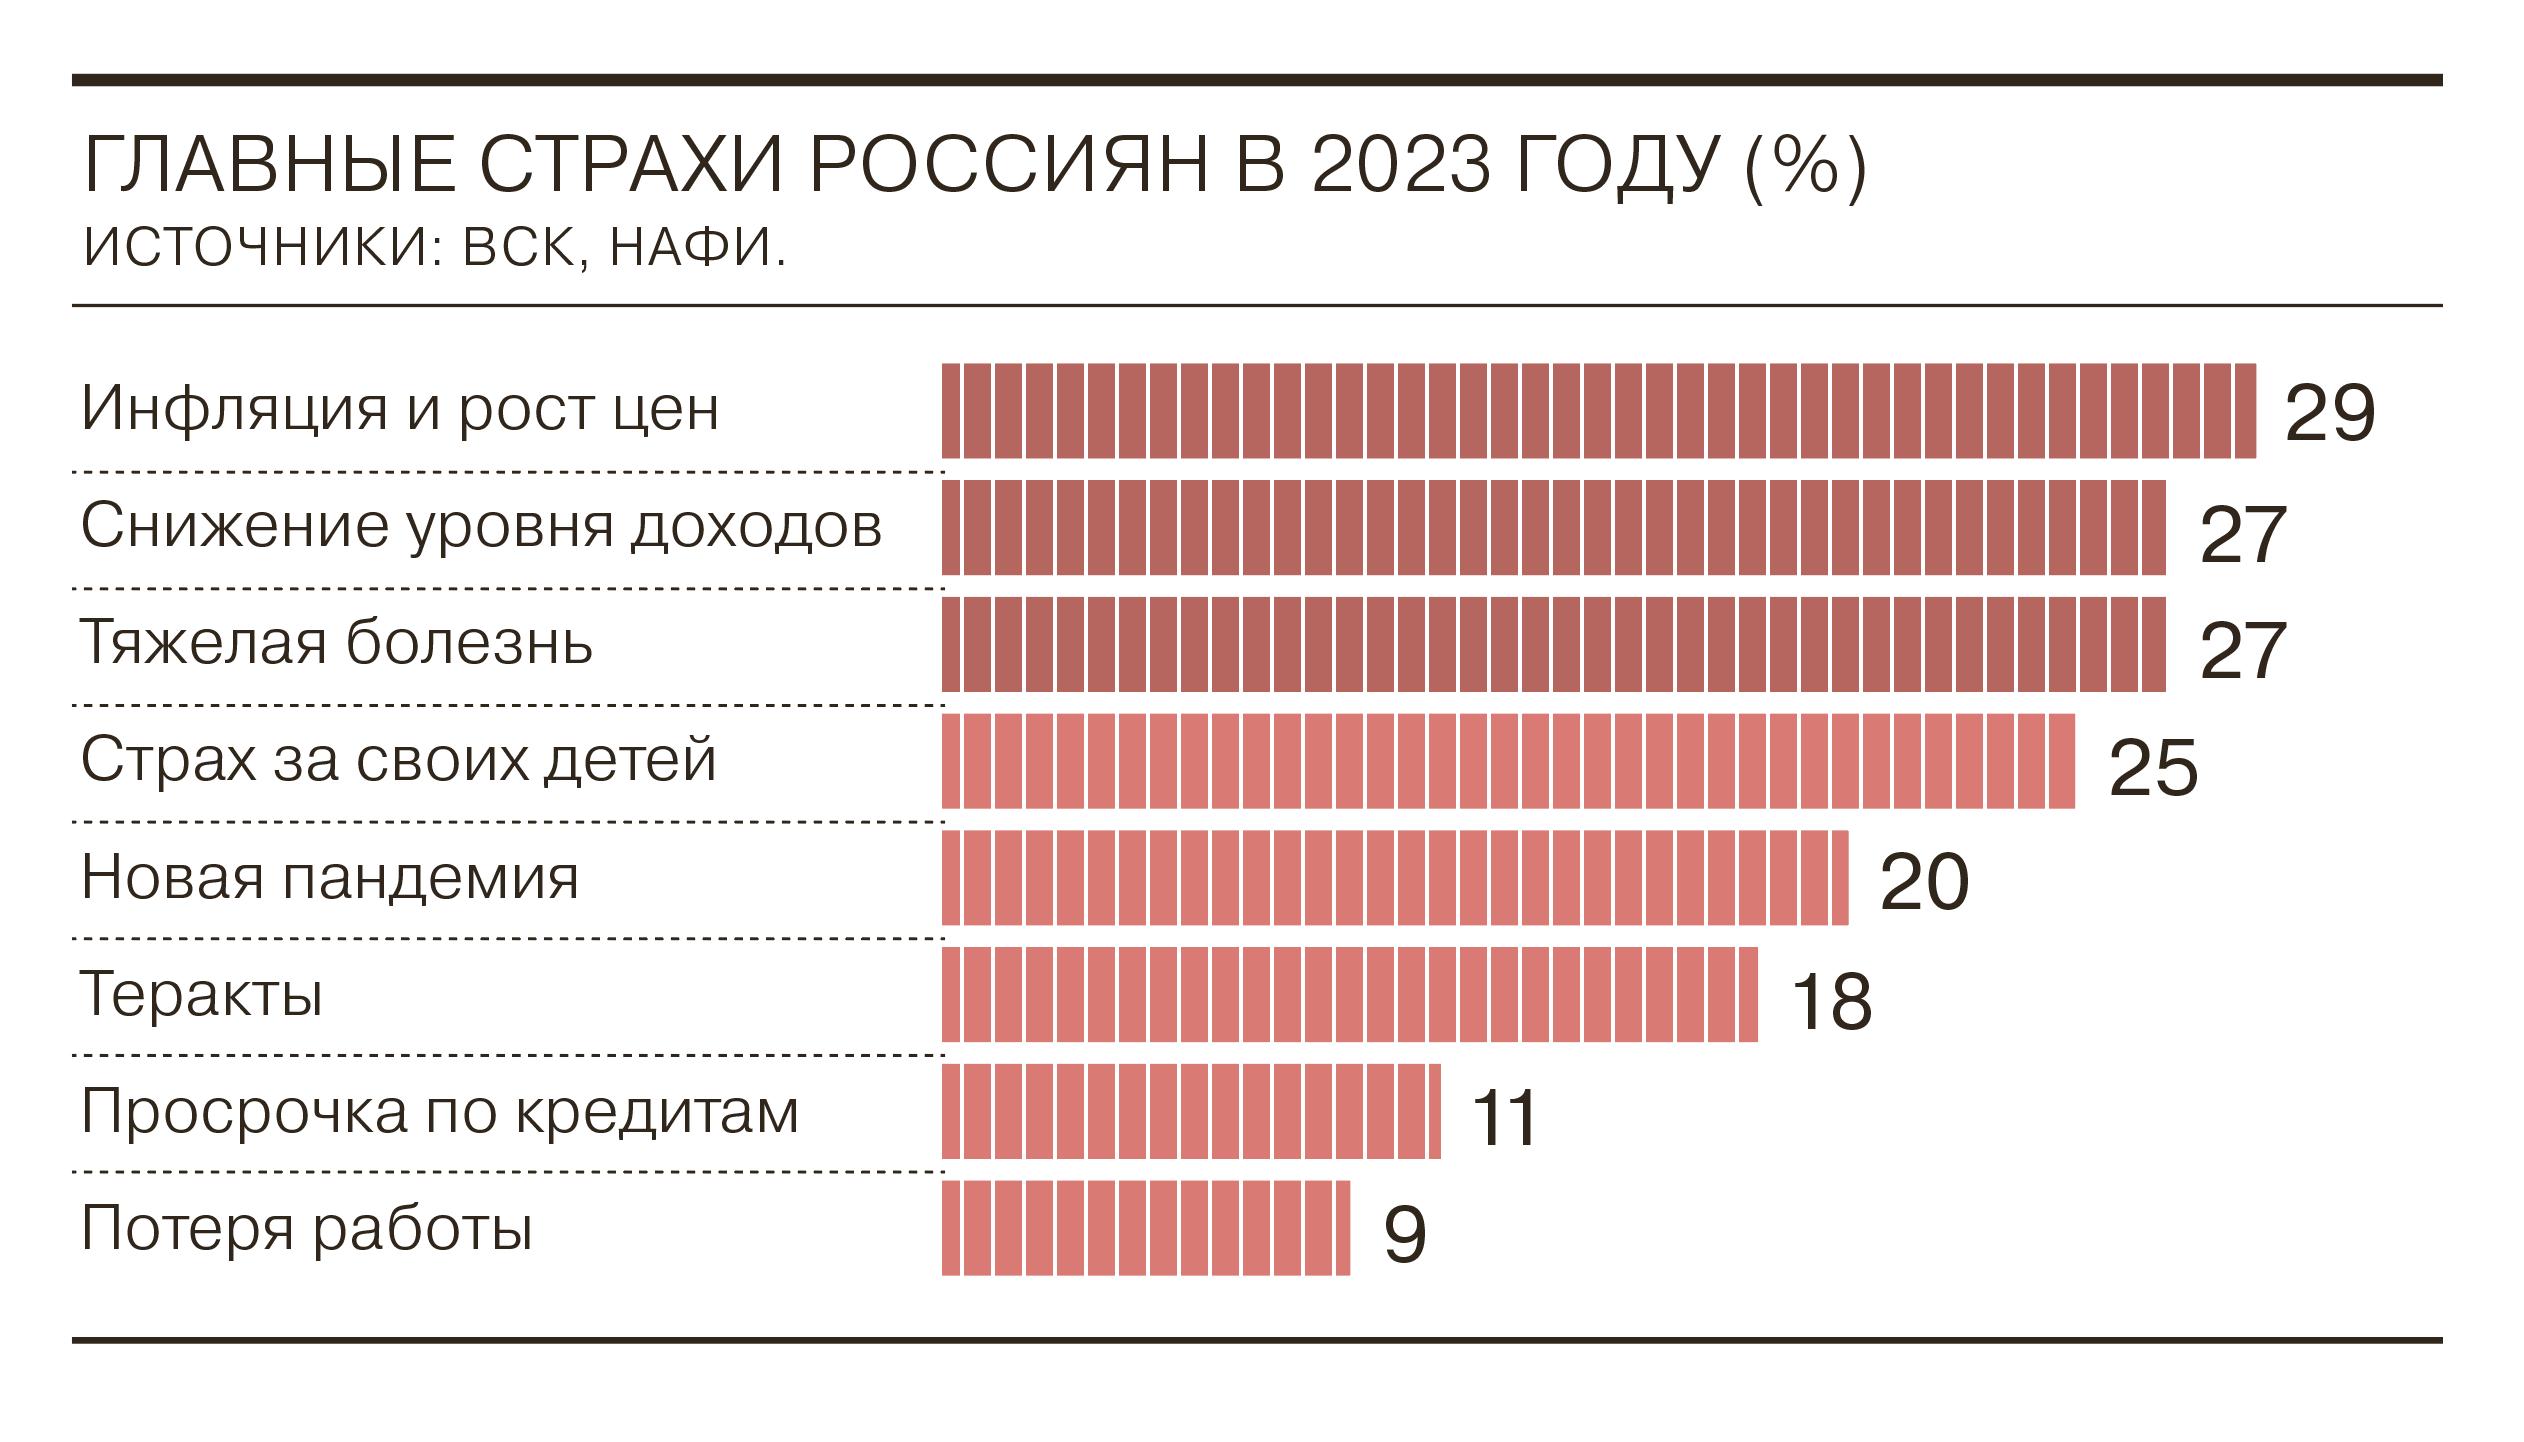 Буд 2023. Страхи россиян 2023. Доходы россиян в 2023. Доходность россиян в 2023 году. Инфляция в России в 2023.